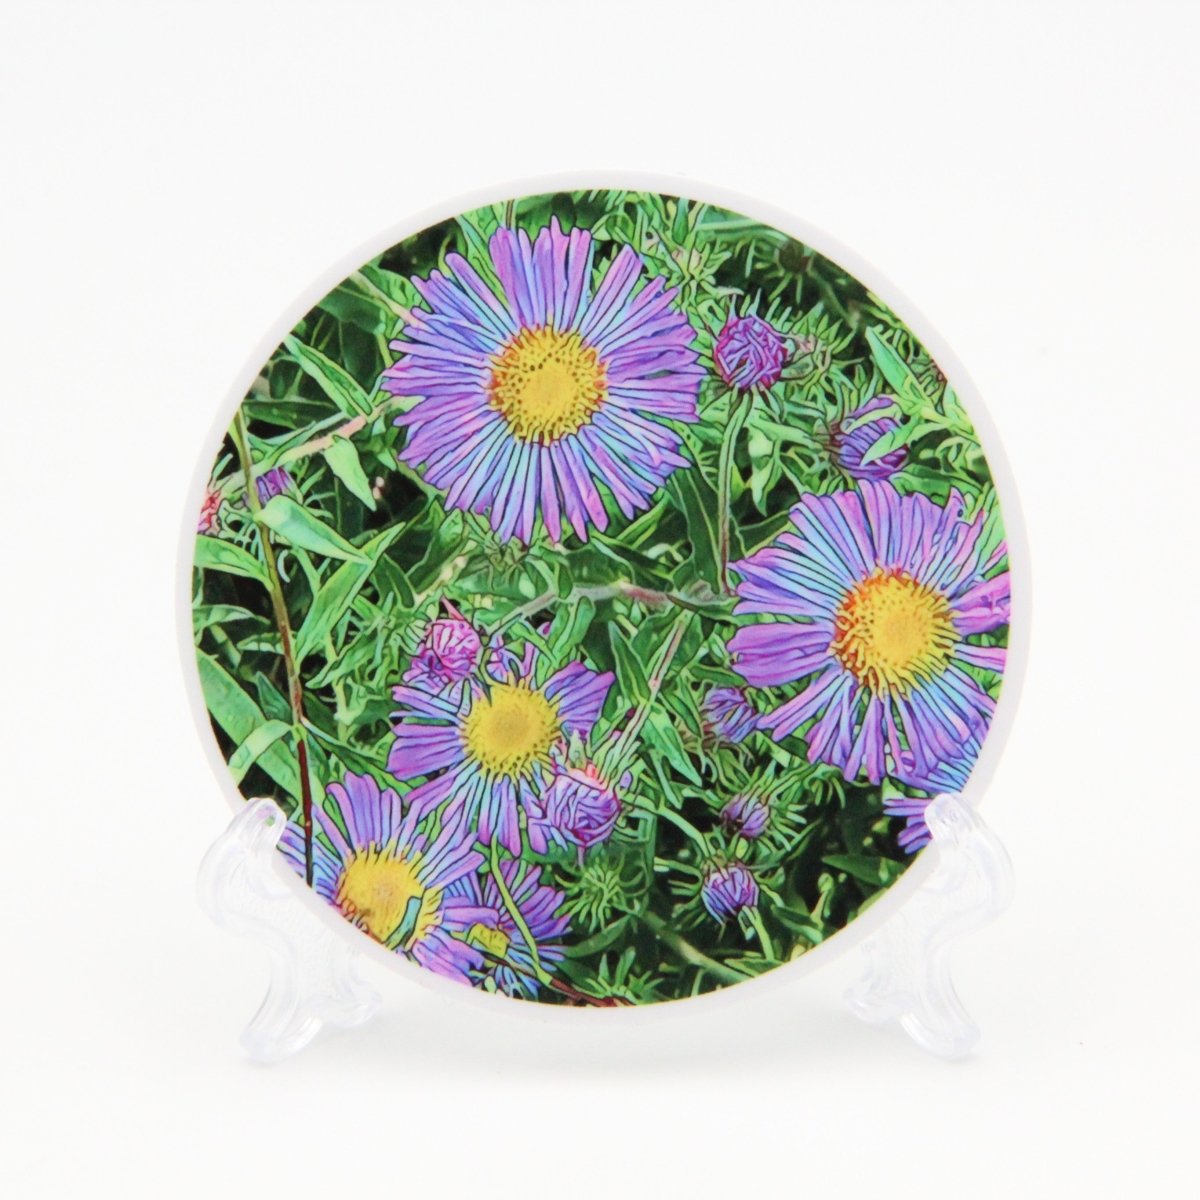 Aster Flowers 3 inch Round Premium Vinyl Sticker